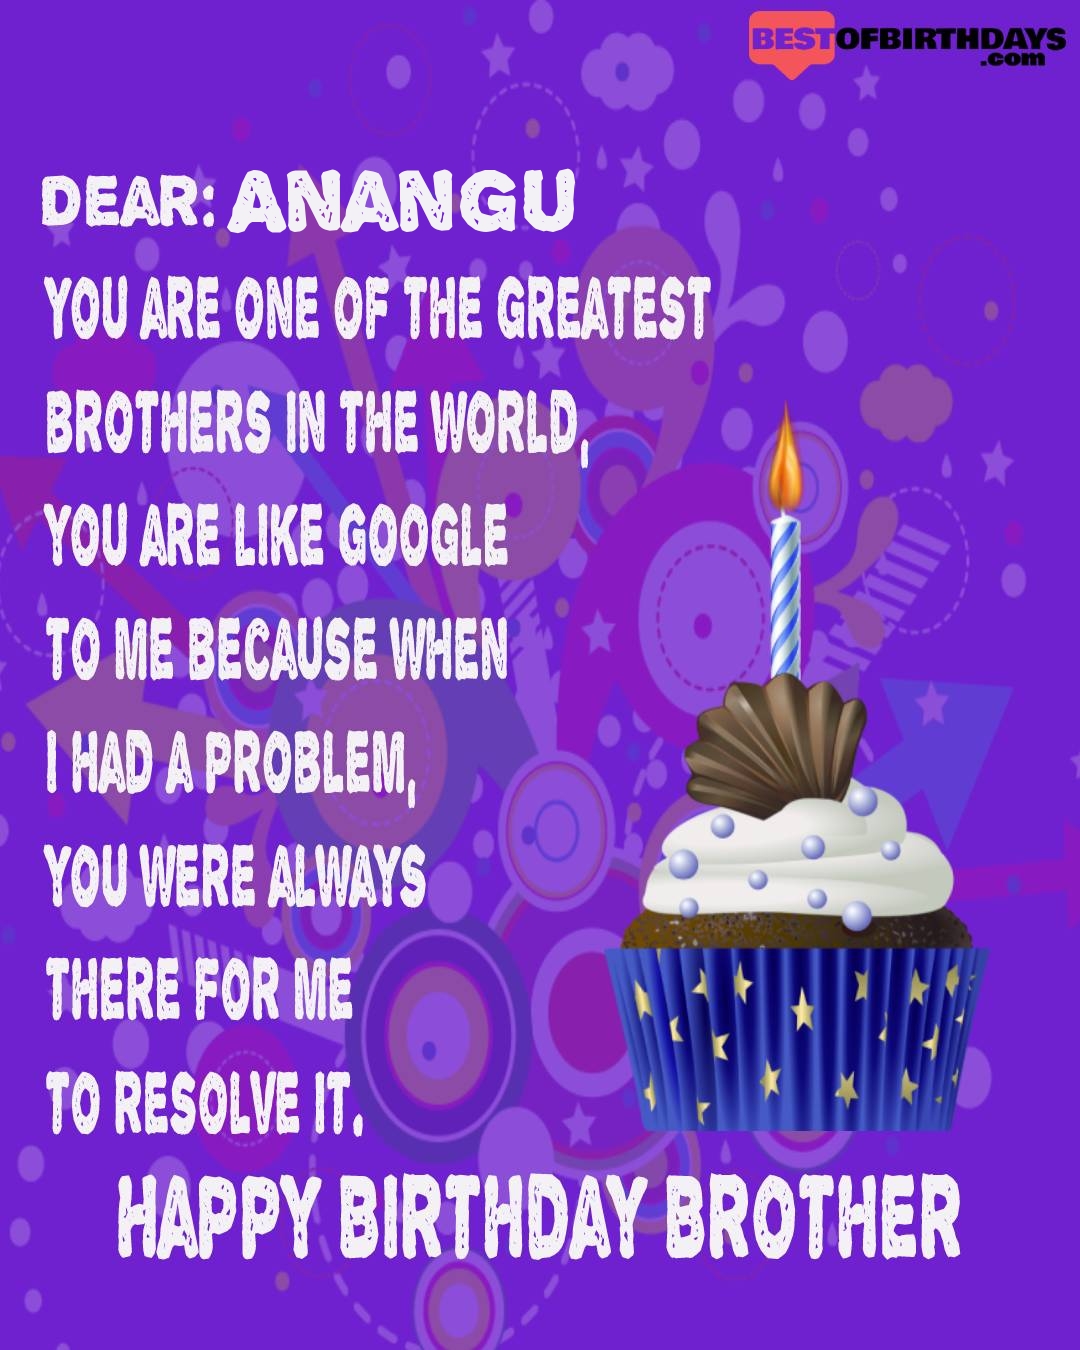 Happy birthday anangu bhai brother bro